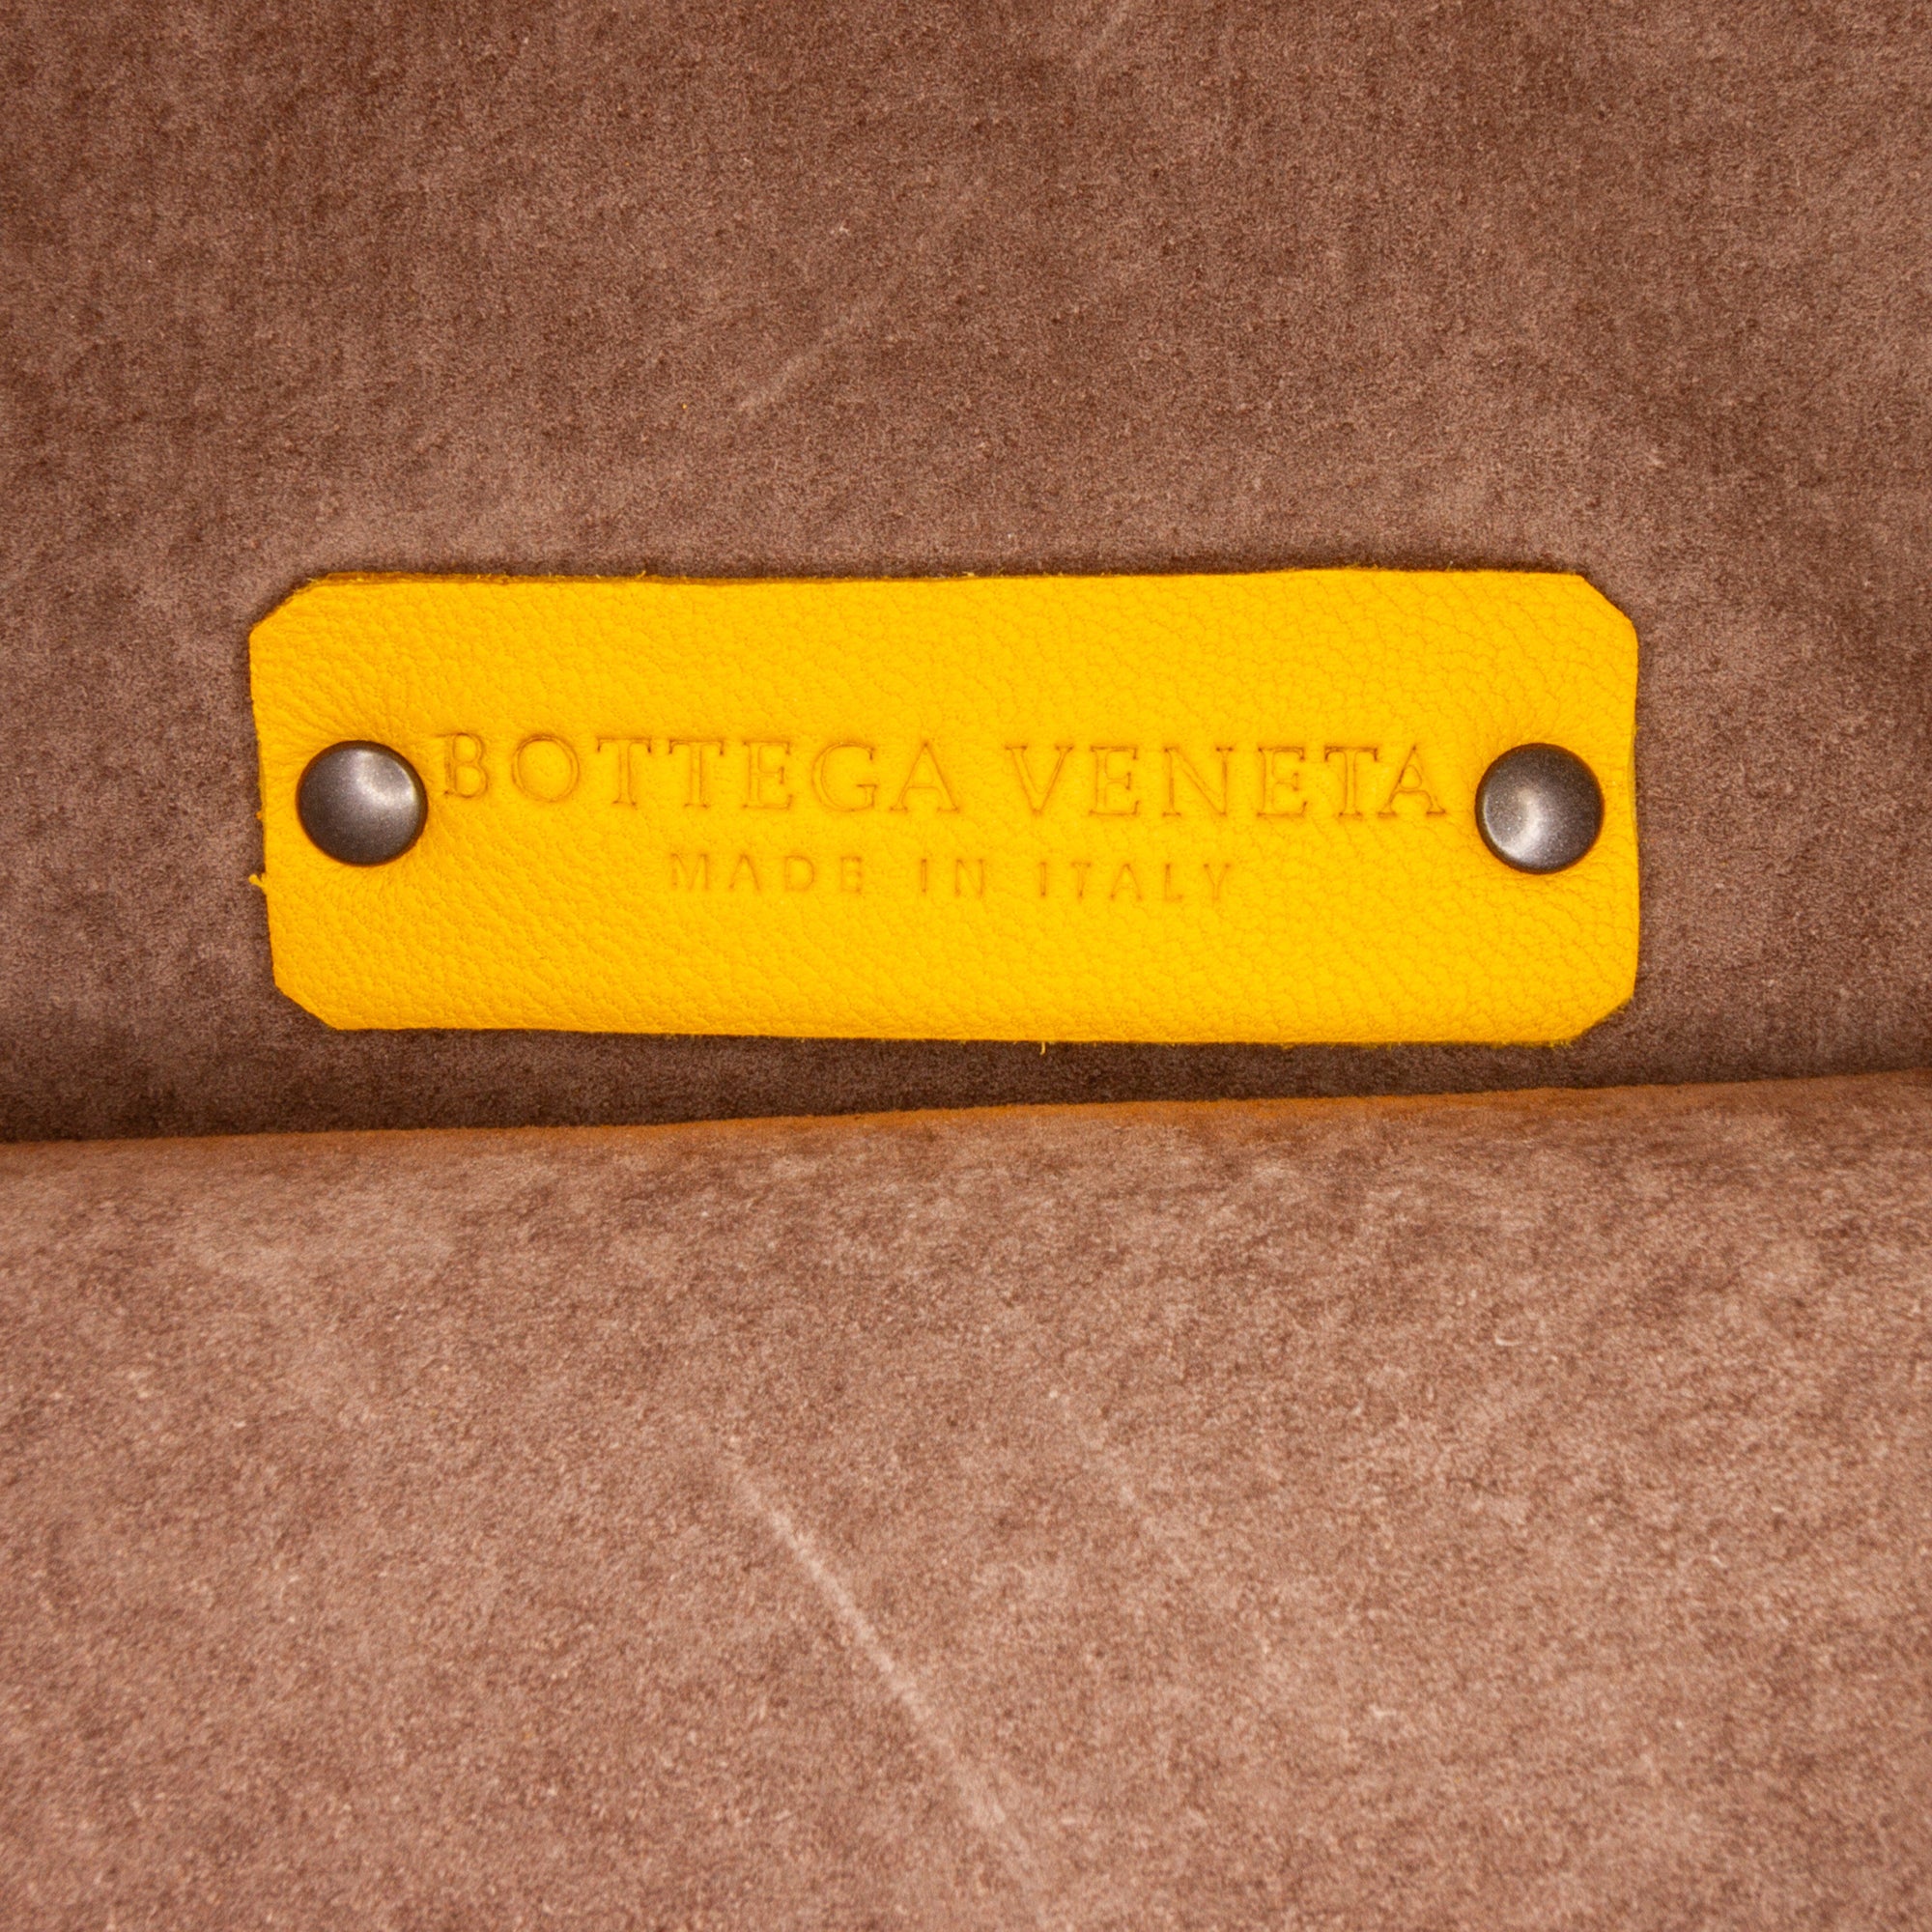 65506 auth BOTTEGA VENETA Seagrass yellow leather POINT MEDIUM Tote Bag